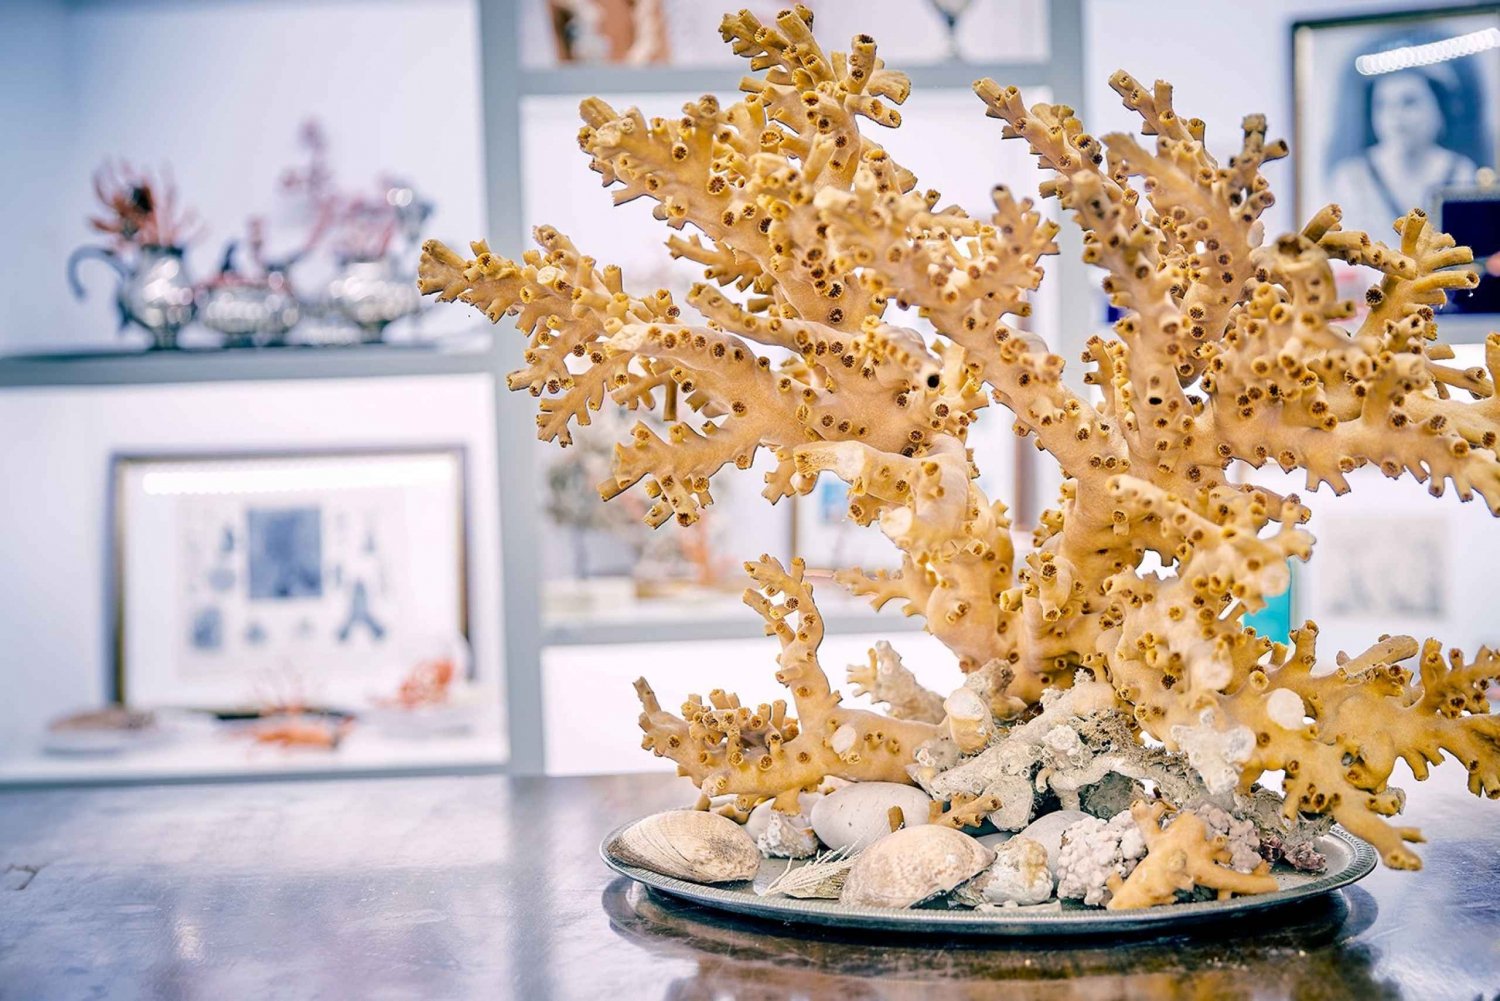 Taller de coral y visita al museo de Sicacca